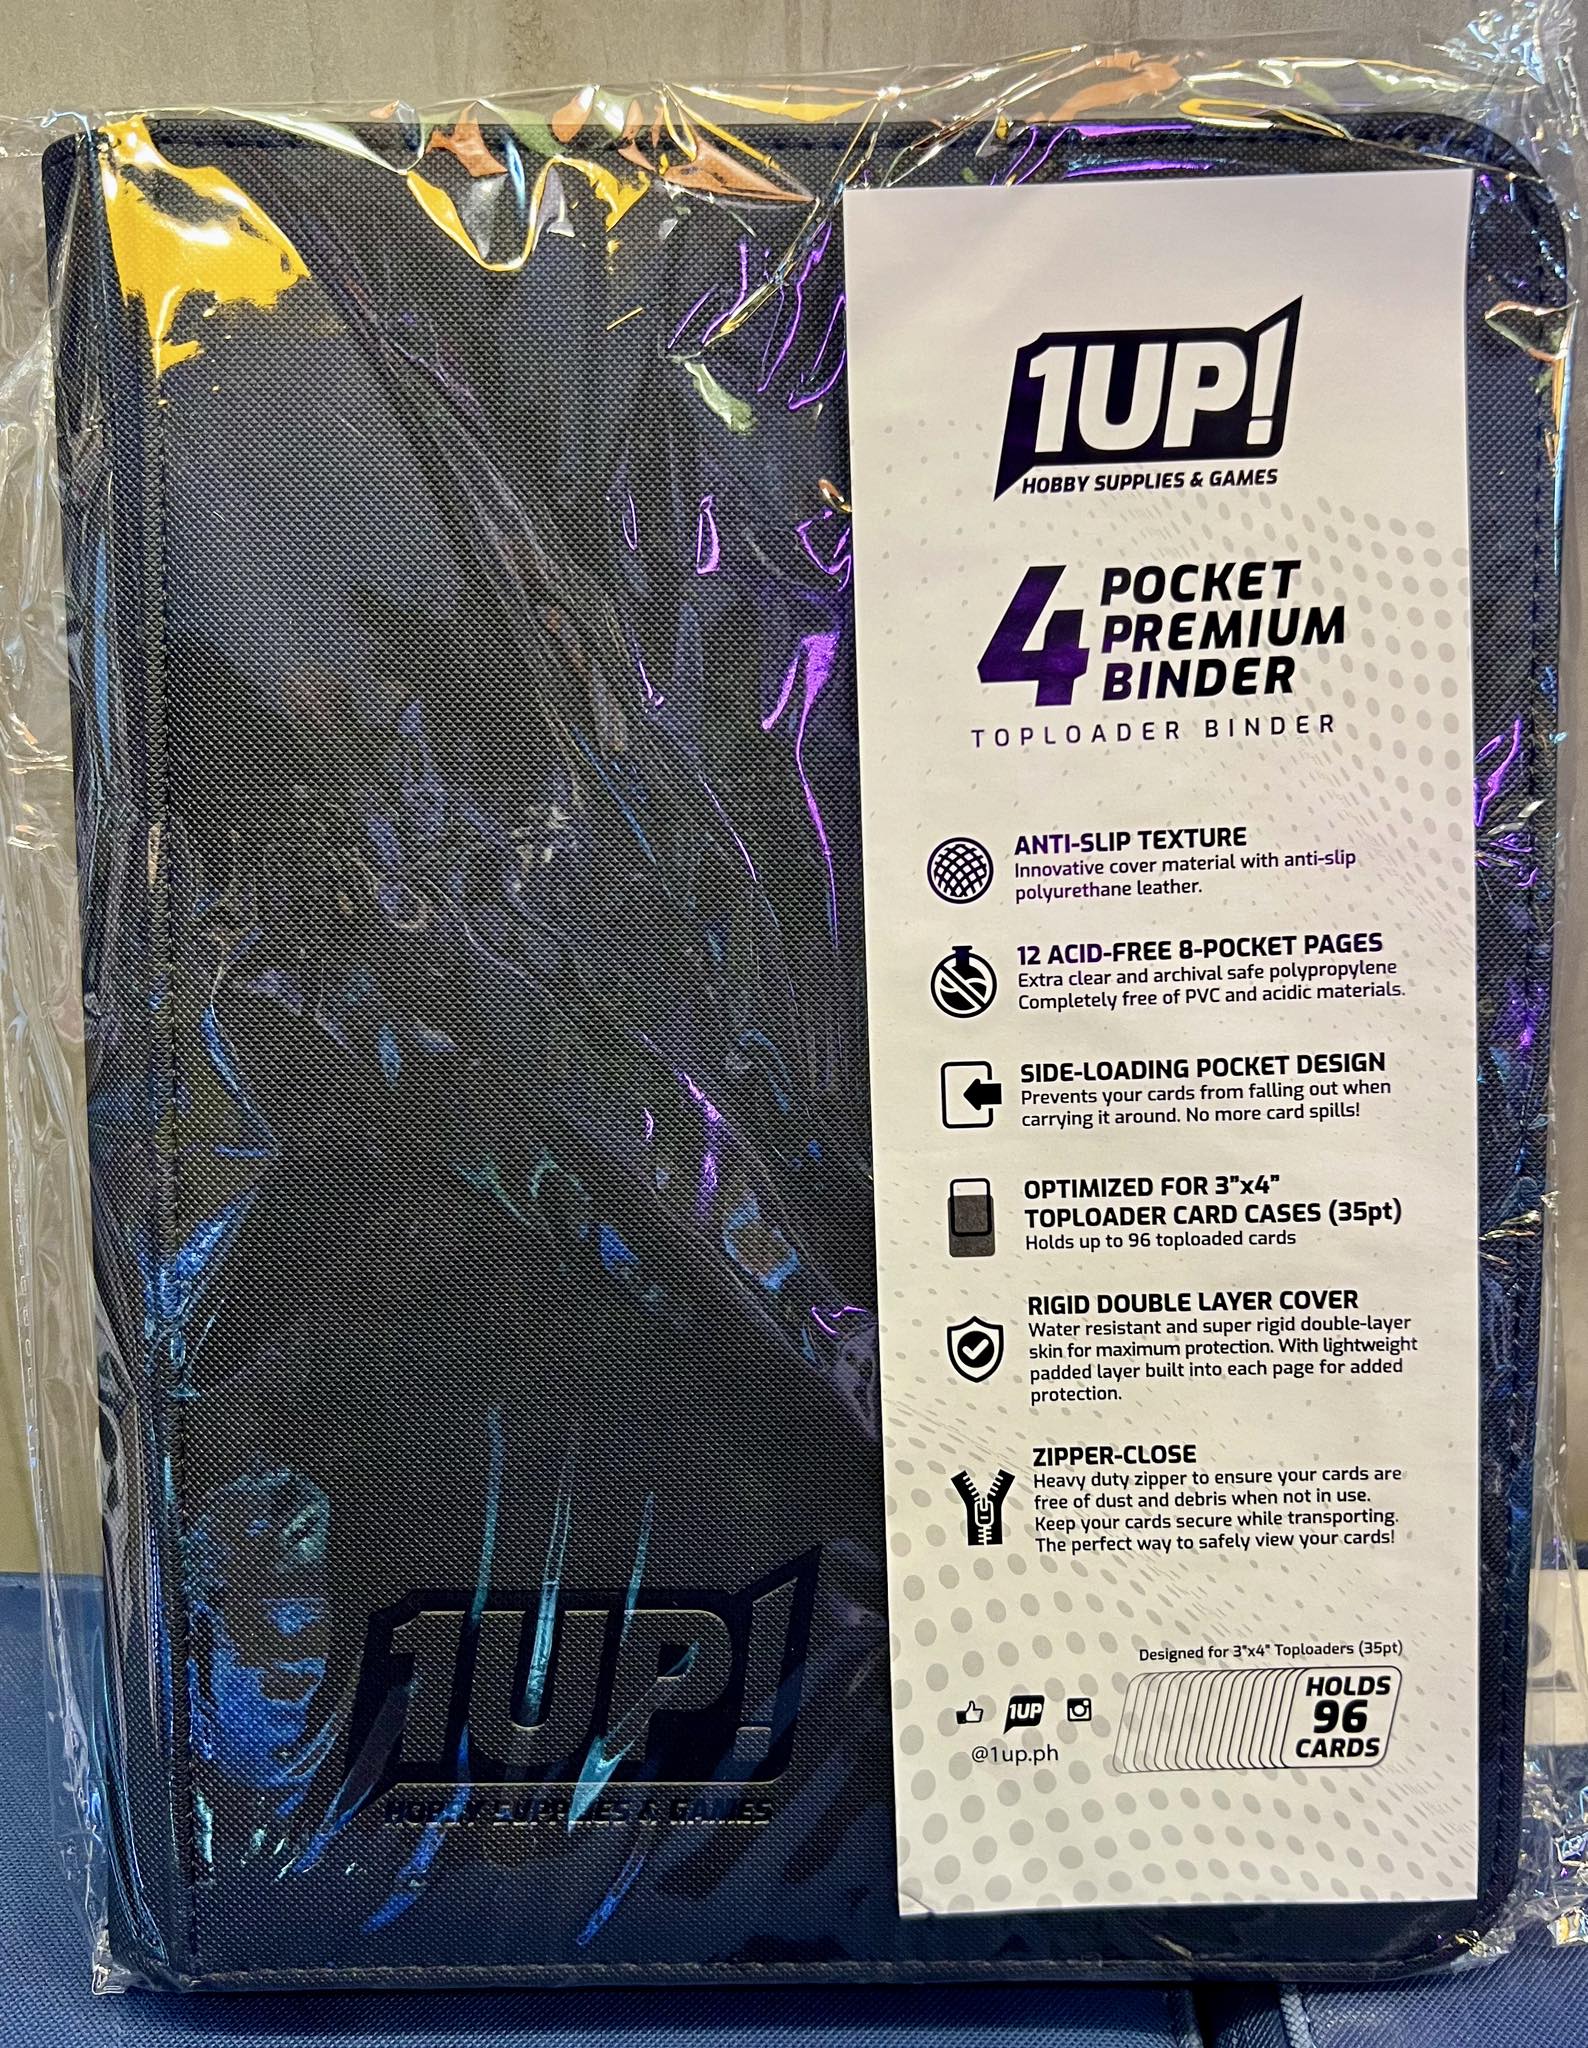 1UP – 4 Pocket – Toploader Binder – Black